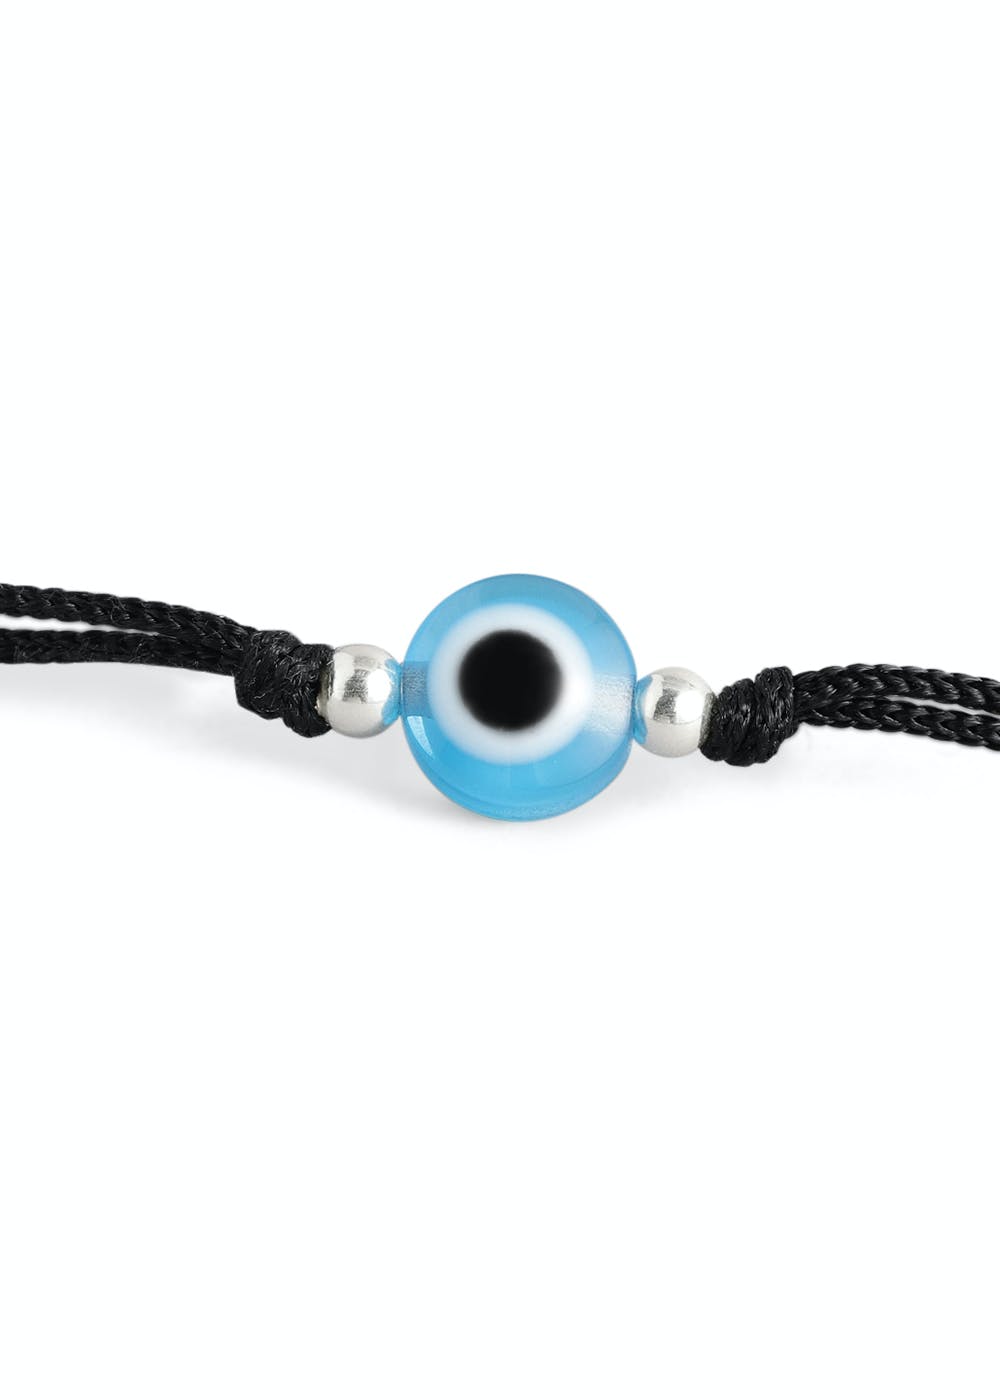 925 Sterling Silver Beads Evil Eye Black Thread Anklet - Blue  #TrishonaTales #anklets #925silver #925sterlingsilver #silveranklets…